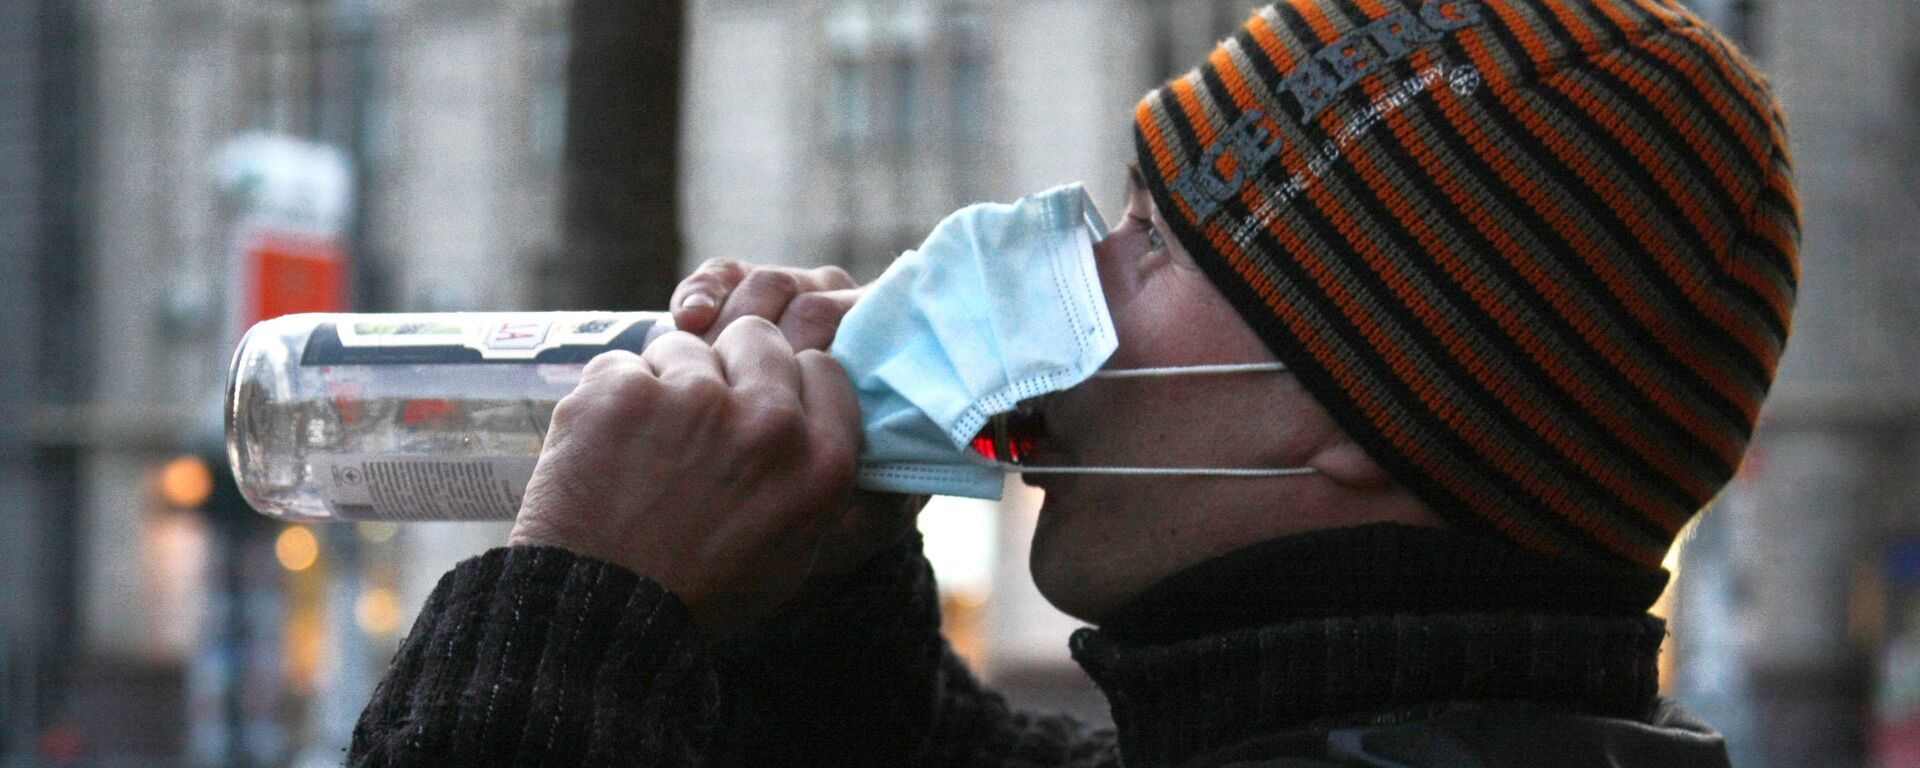 Житель в защитной маске пьет водку - Sputnik Узбекистан, 1920, 18.01.2021